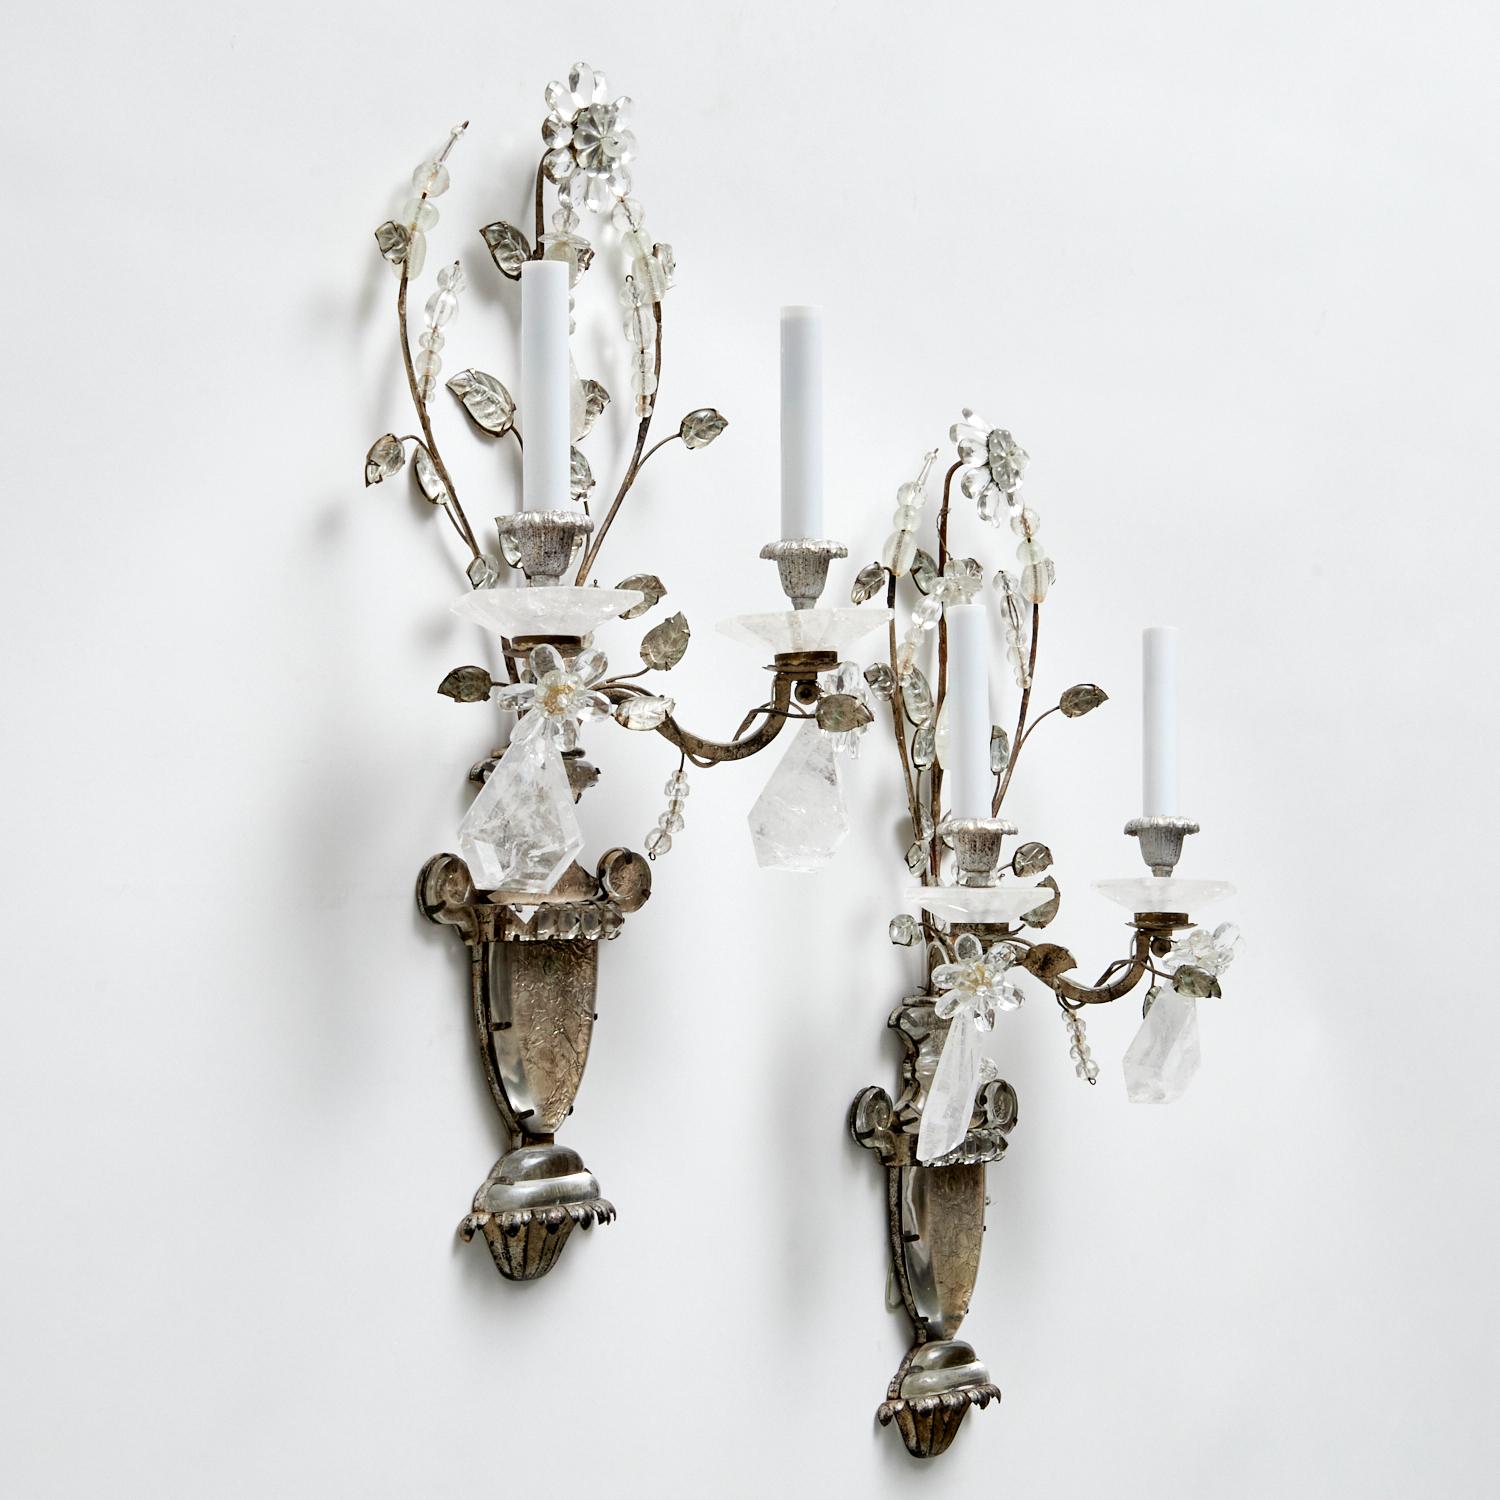 Magnifique paire d'appliques MaisonBagues en cristal de roche et feuilles d'argent. Avec une urne et des fleurs